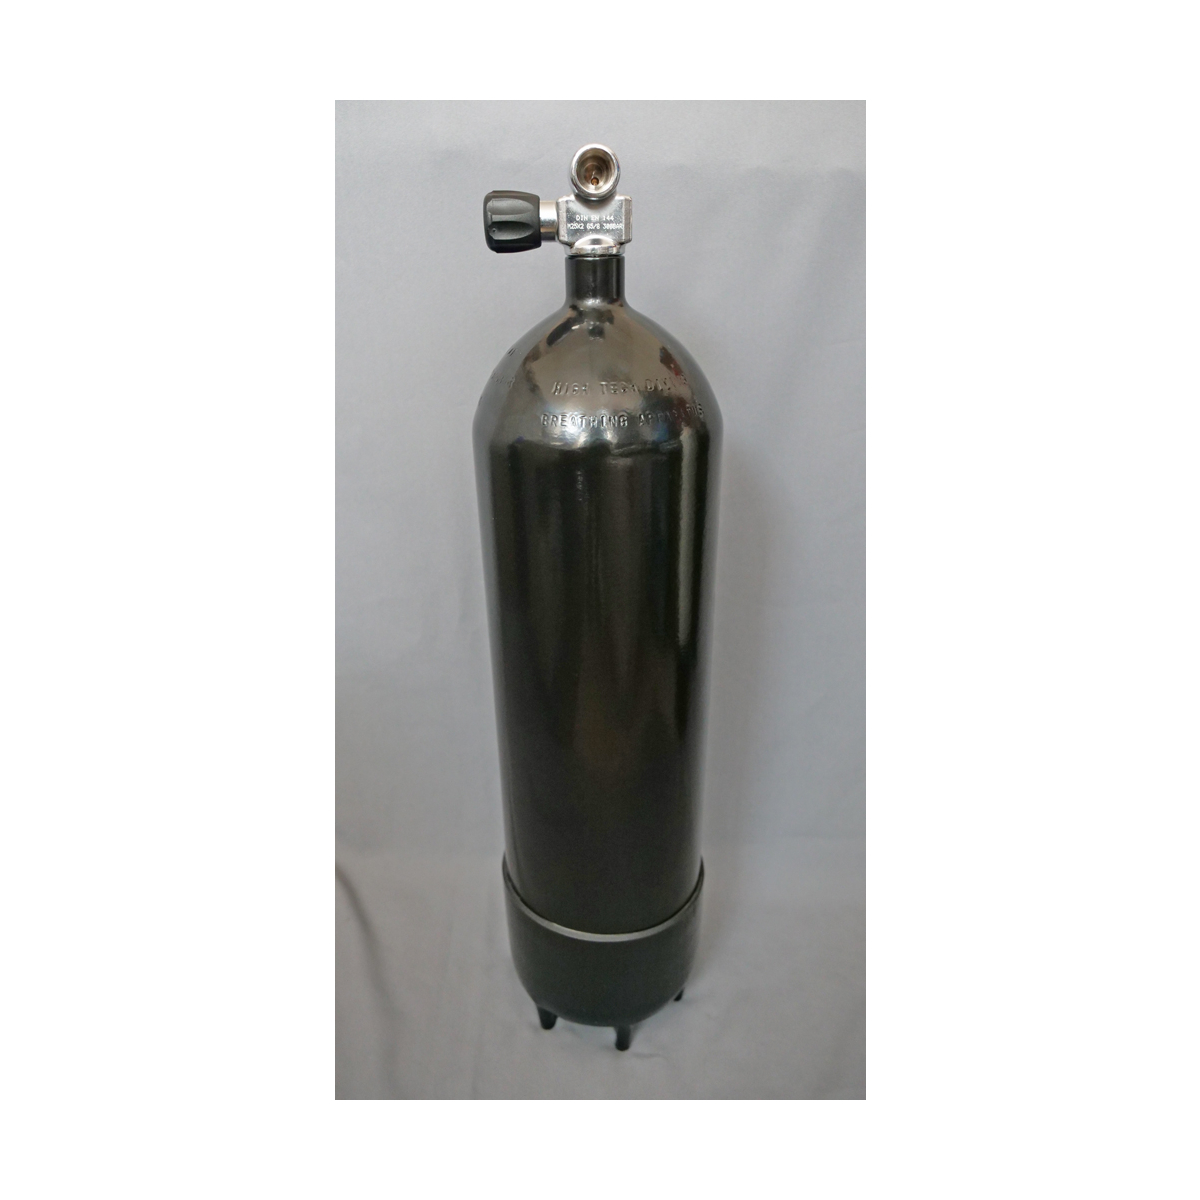 Tauchflasche 15 Liter 300bar Breathing Apparatus komplett mit Ventil 